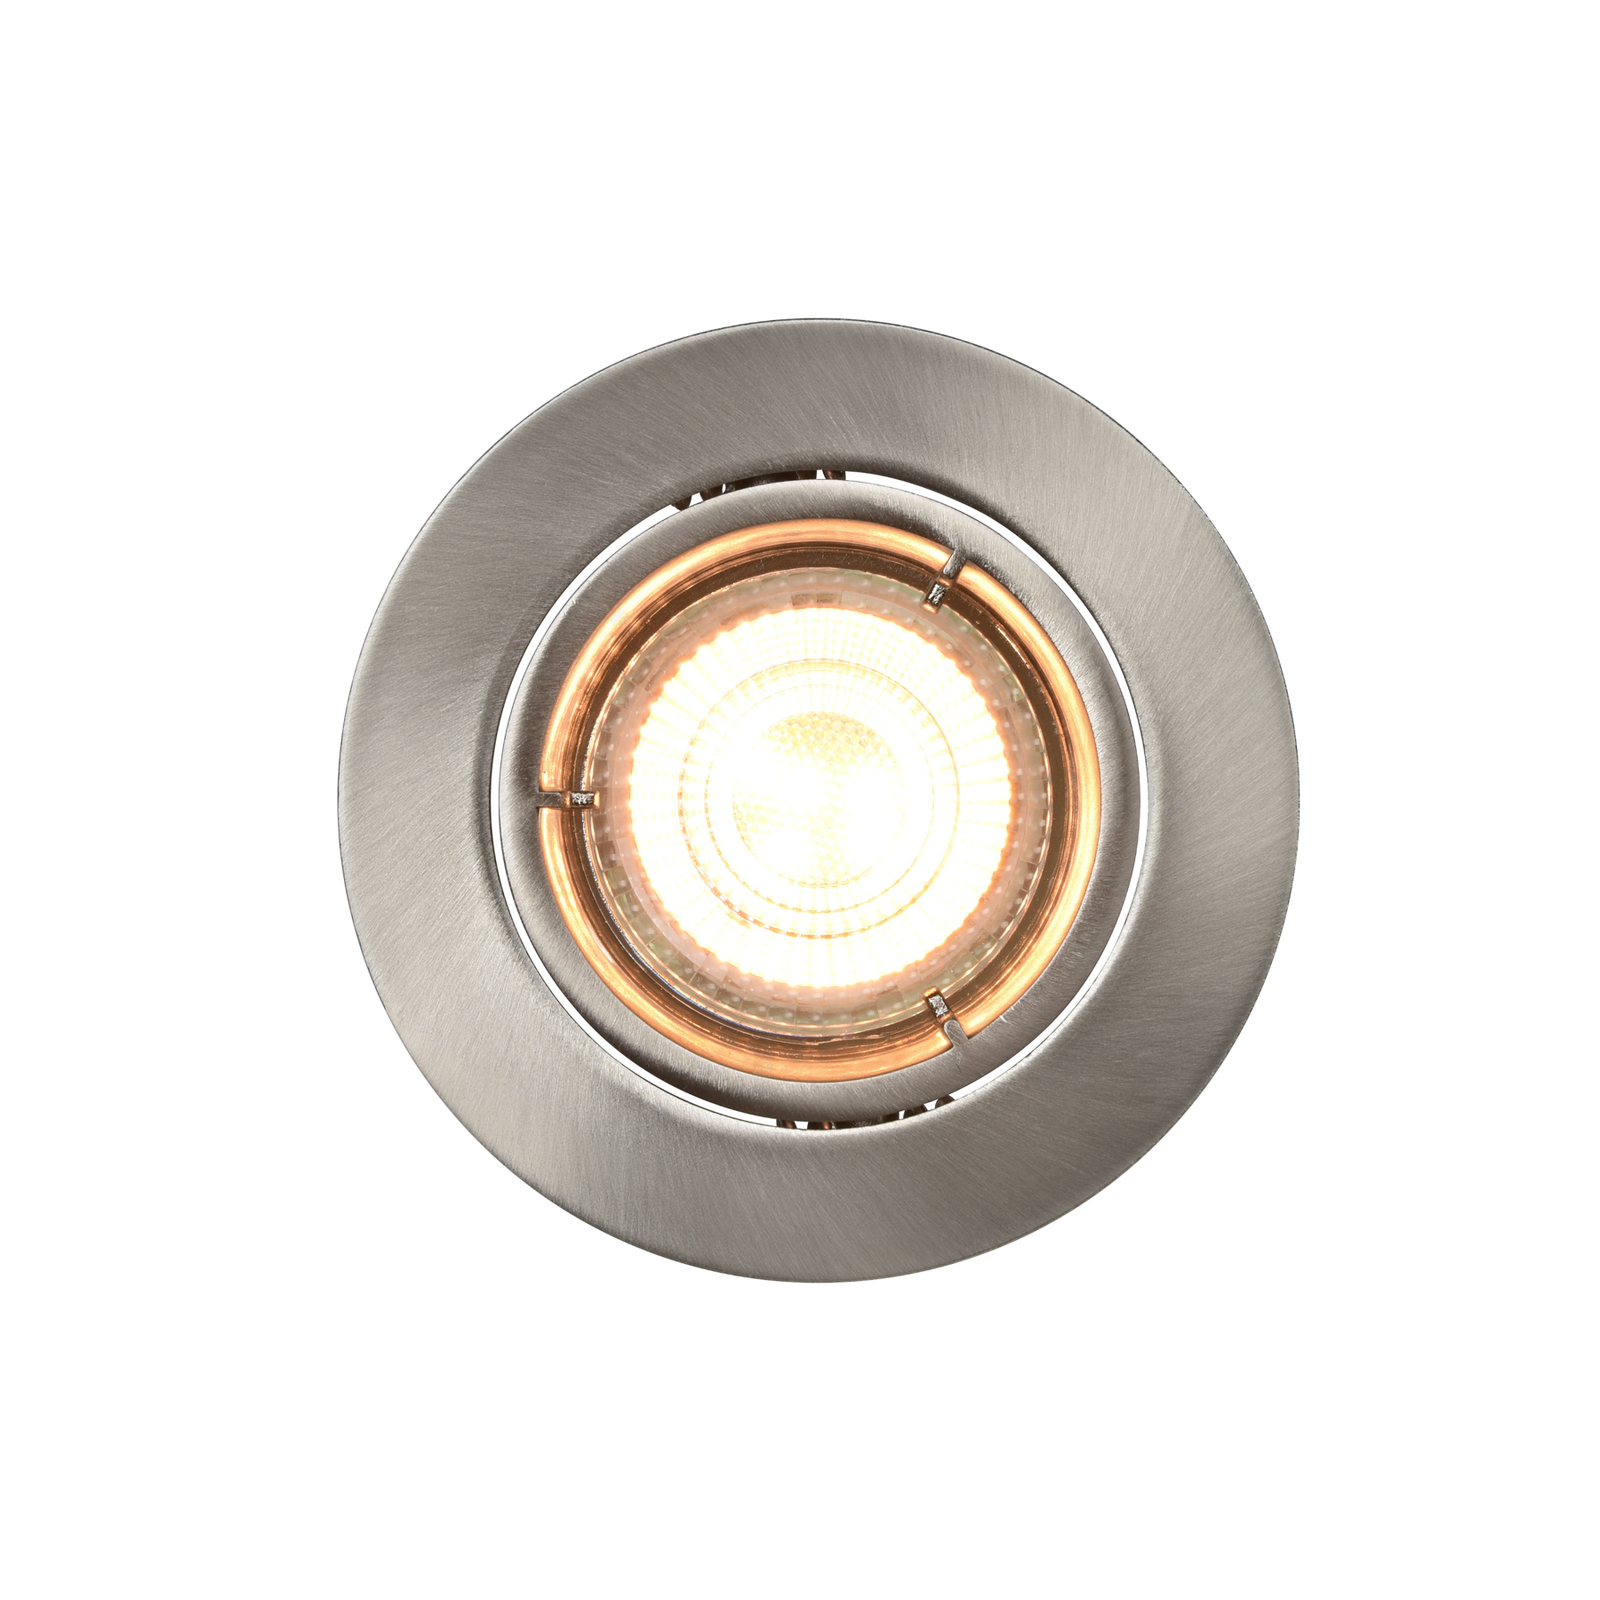 LED-indbygningslampe Carina Smart, 3 enheder, rund, nikkel